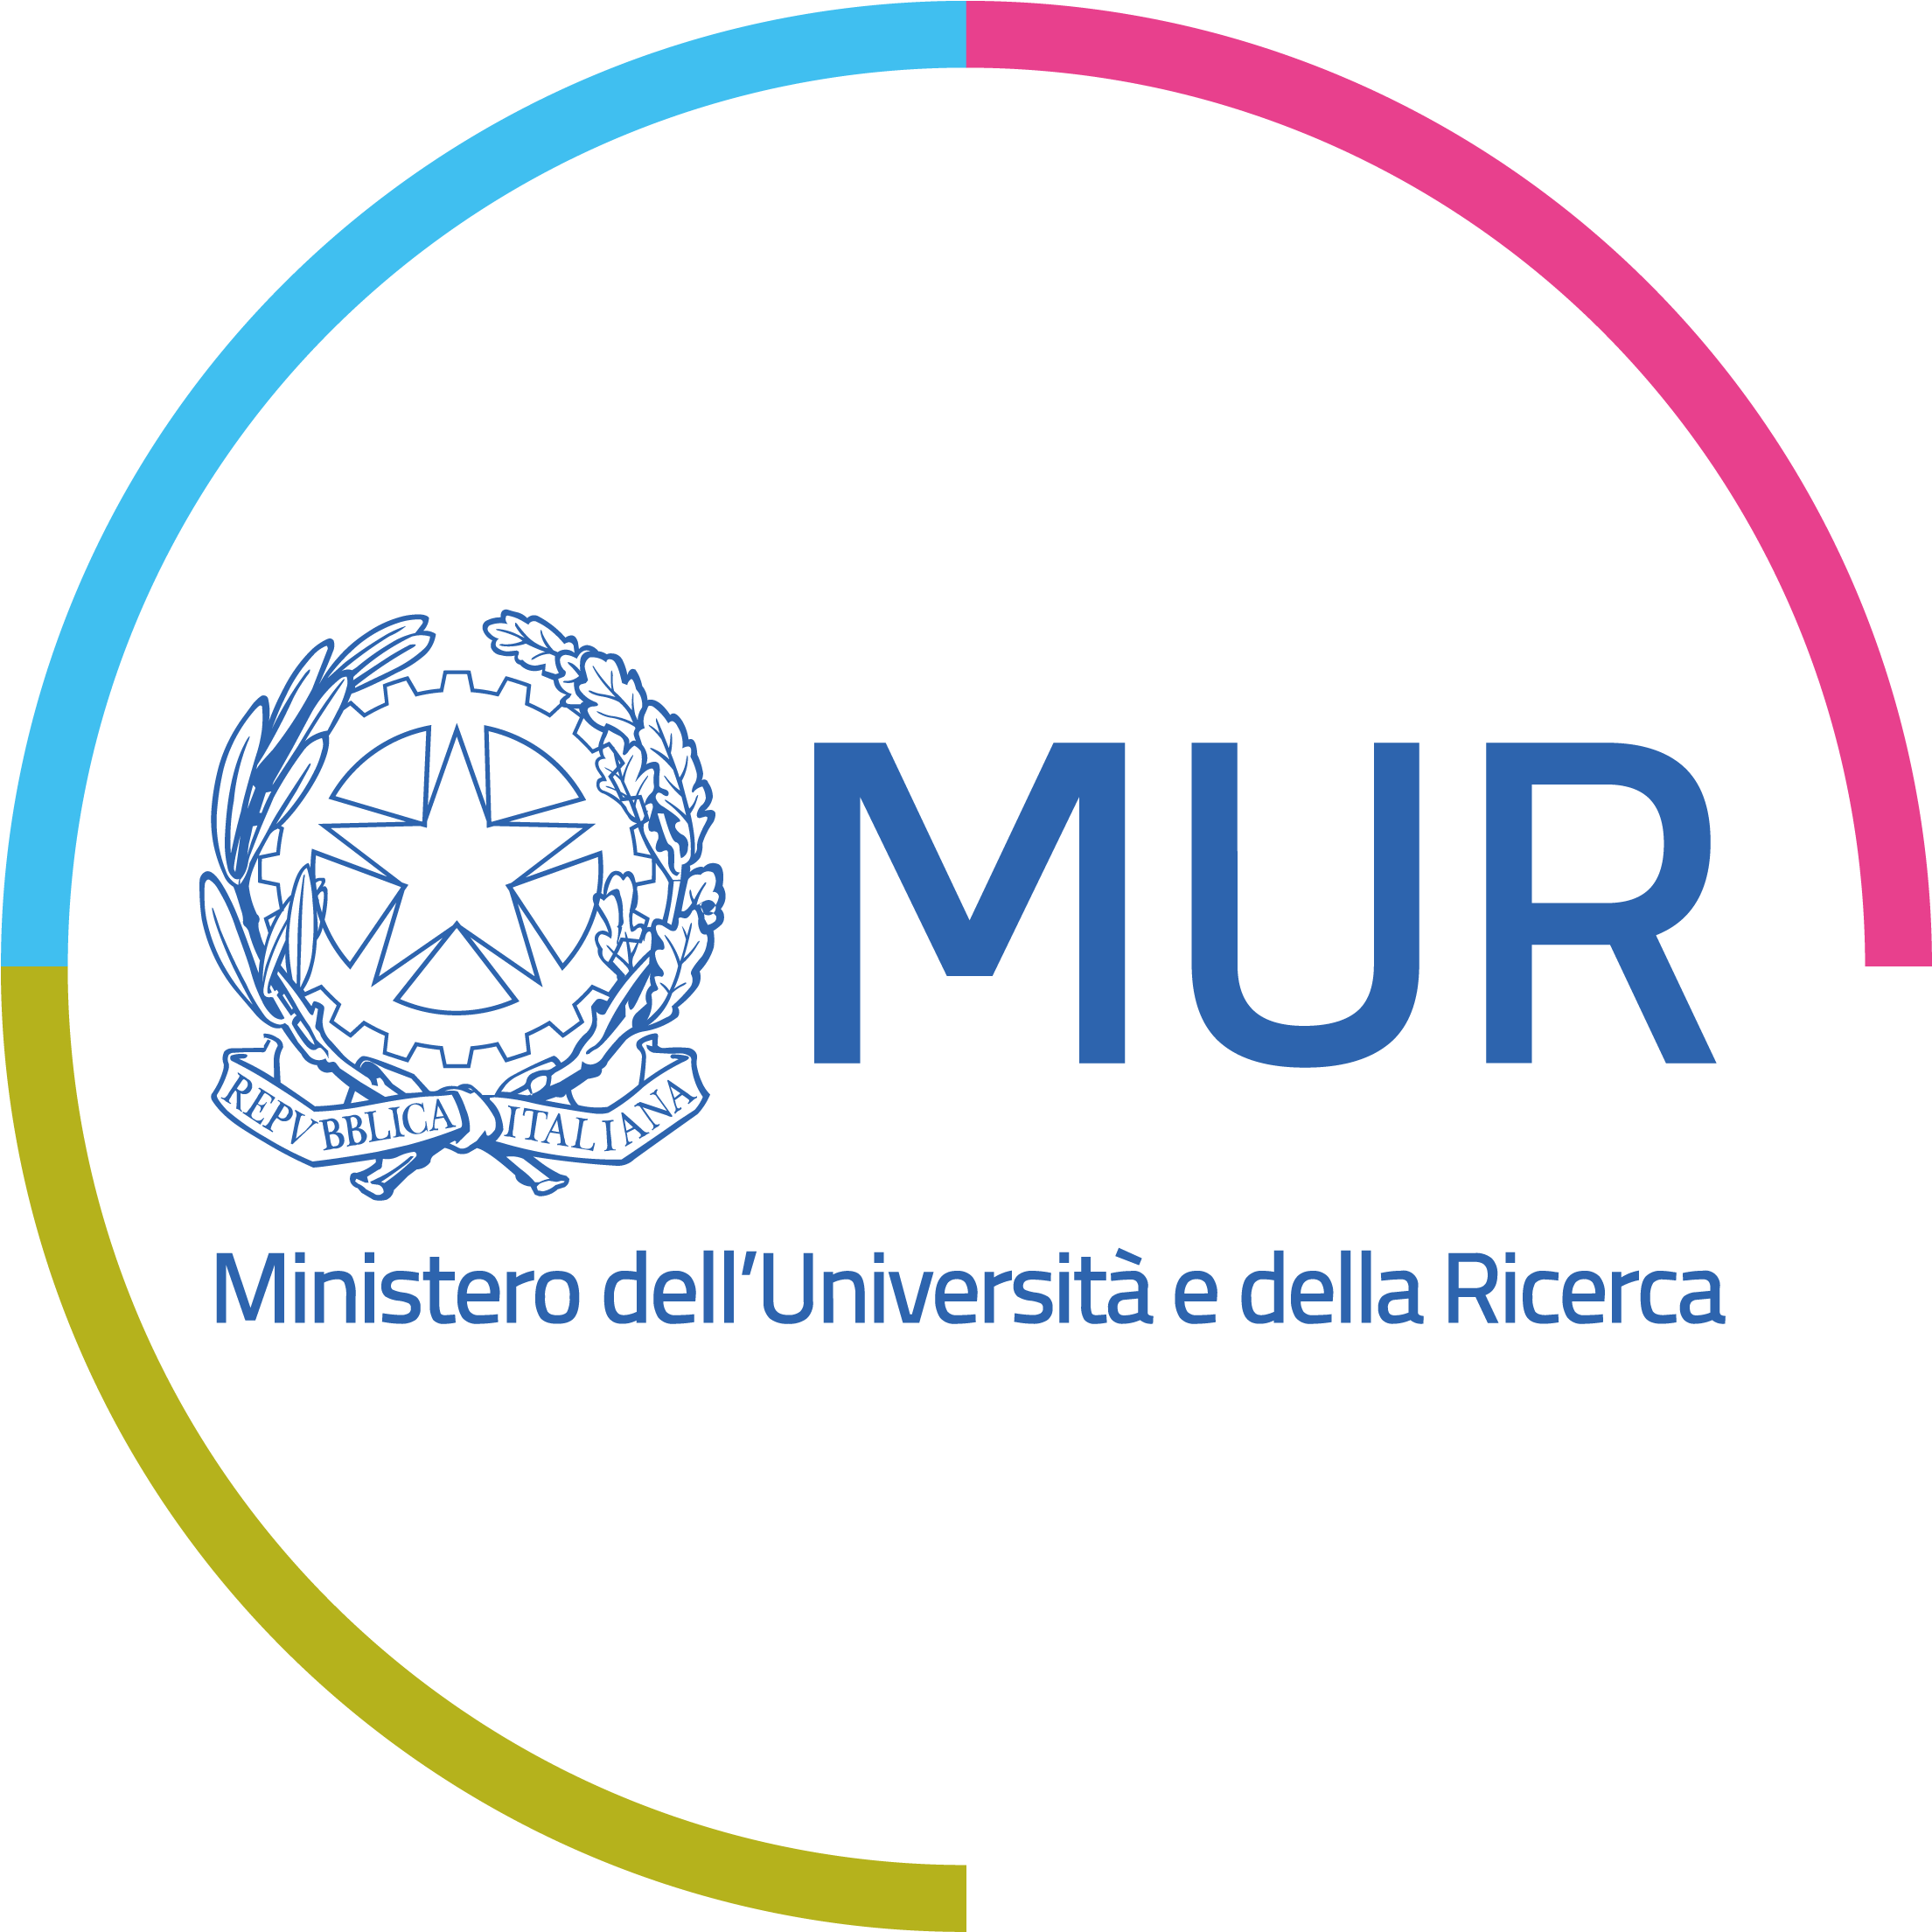 logo MUR